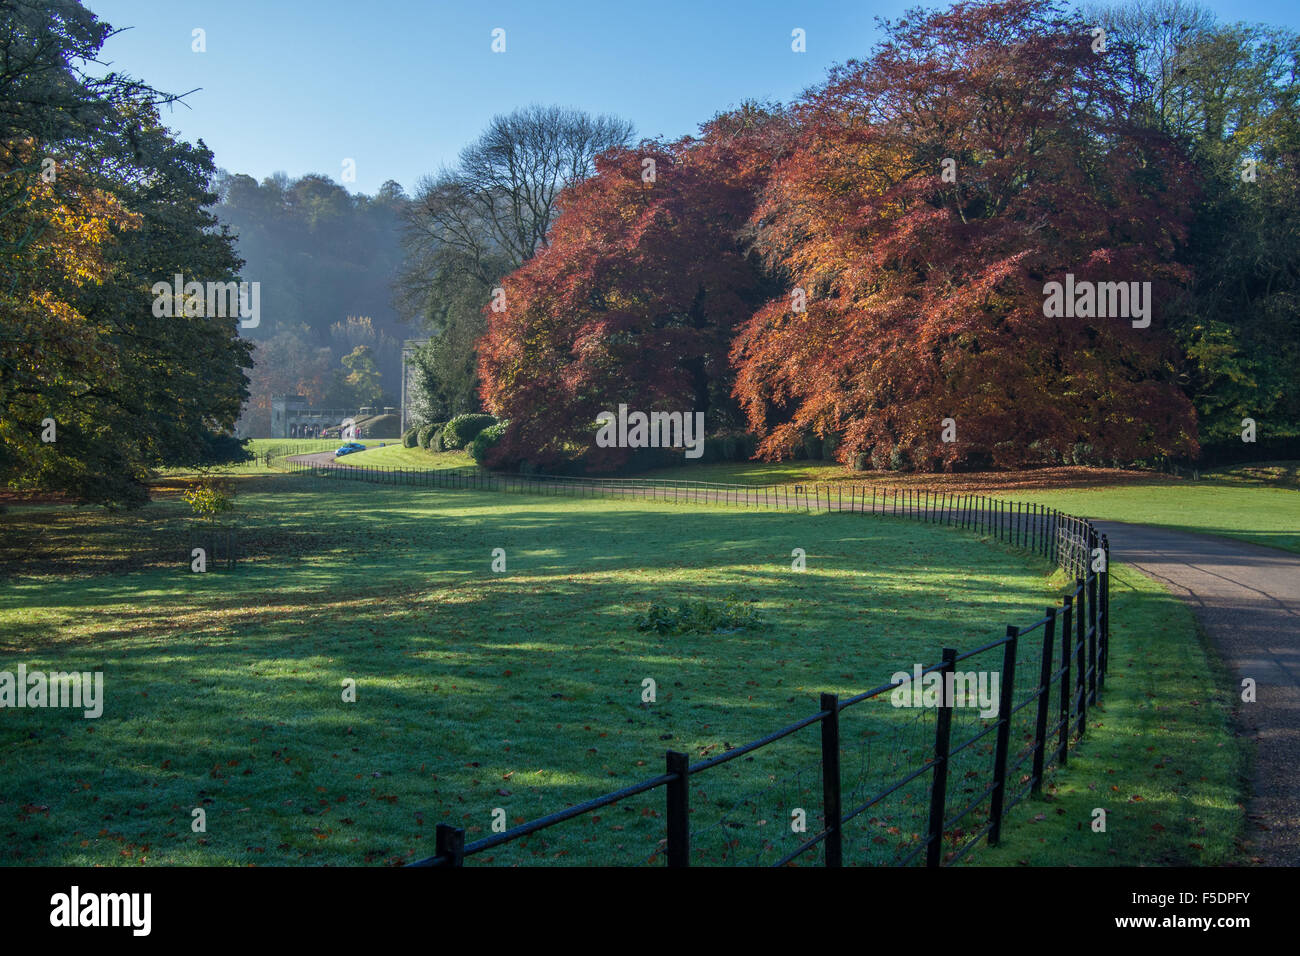 Ilam Park, Ilam im Peak Distrist, in der Nähe von Ashbourne, Derbyshire, England. Stockfoto